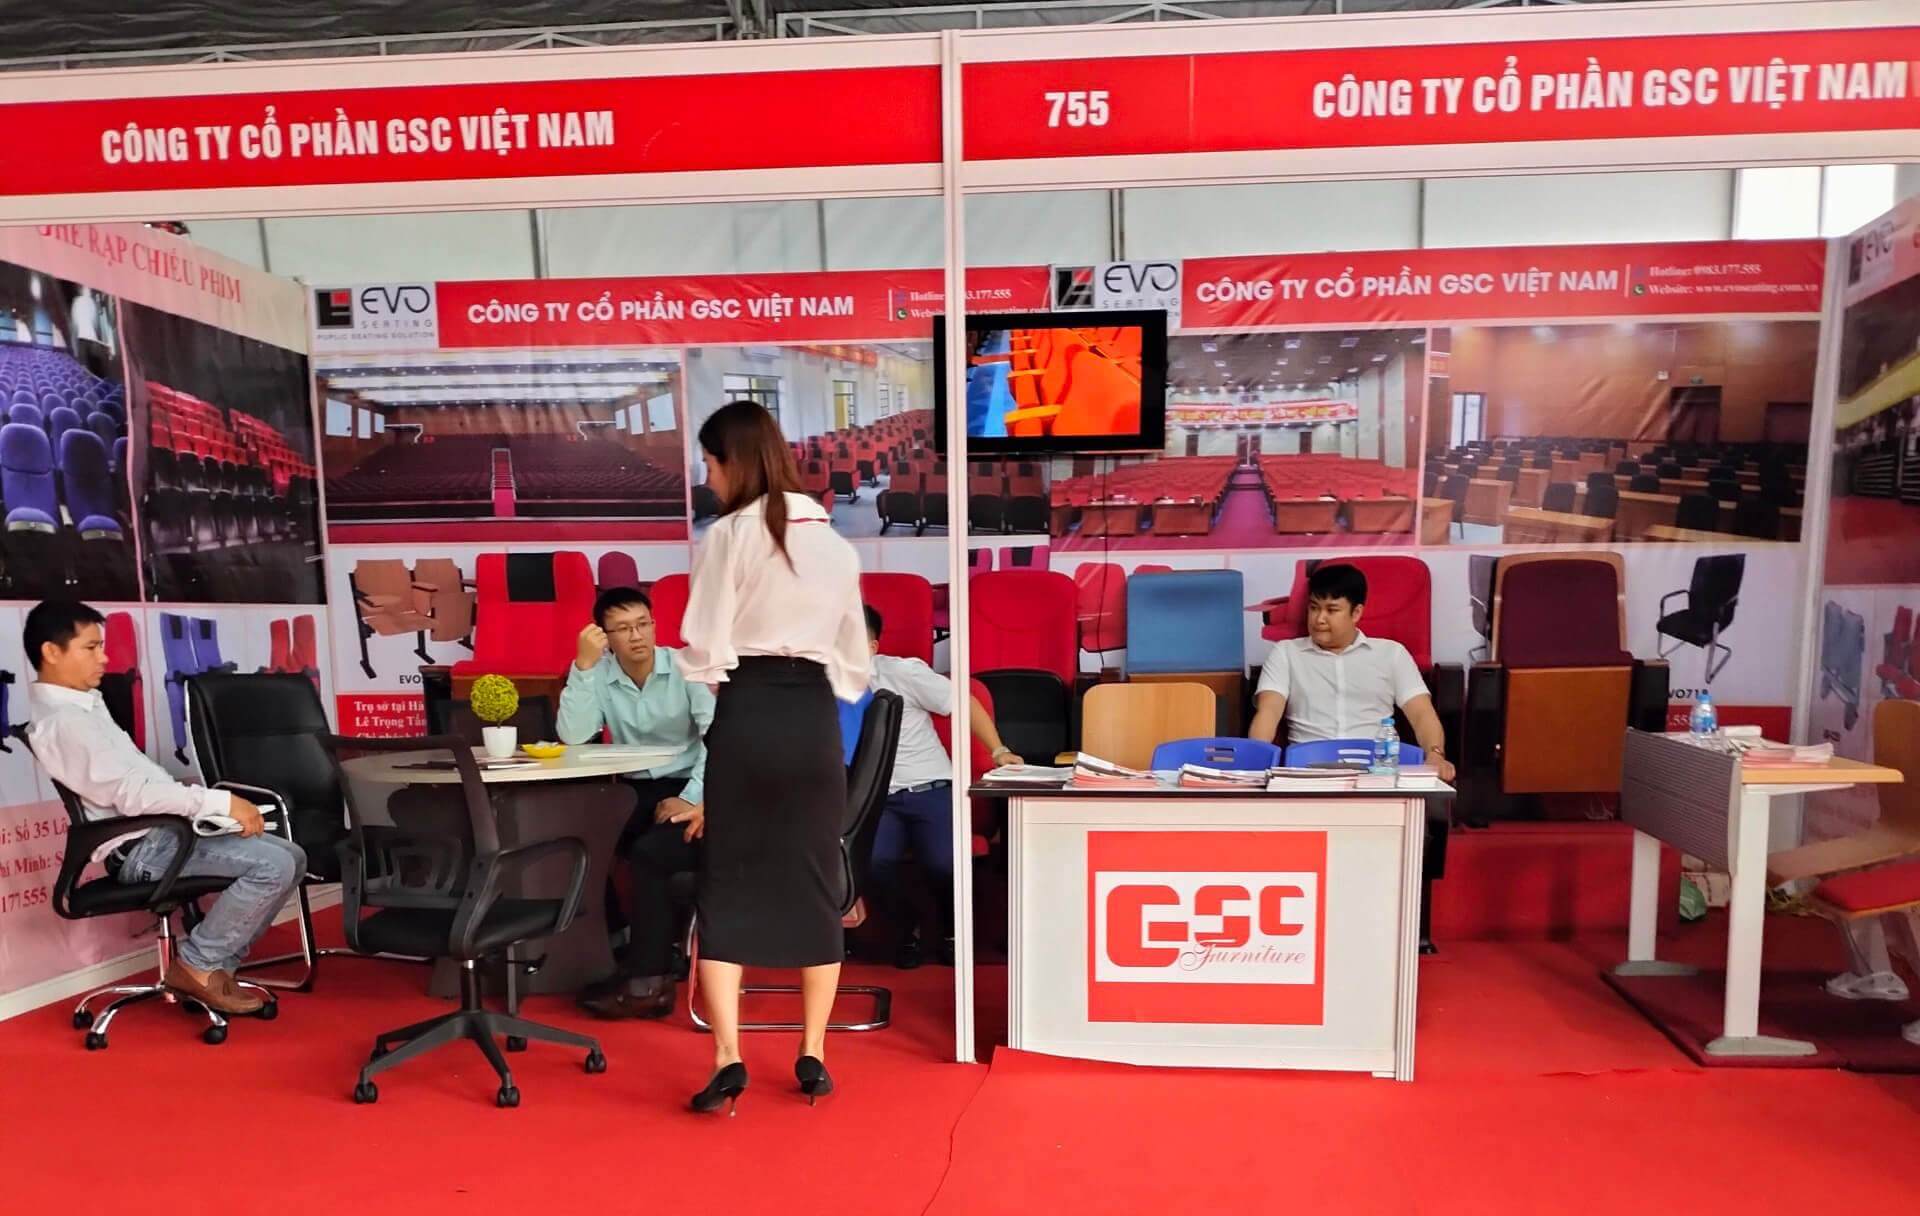 Nhân viên chăm sóc khách hàng của GSC Việt Nam tư vấn cho khách hàng